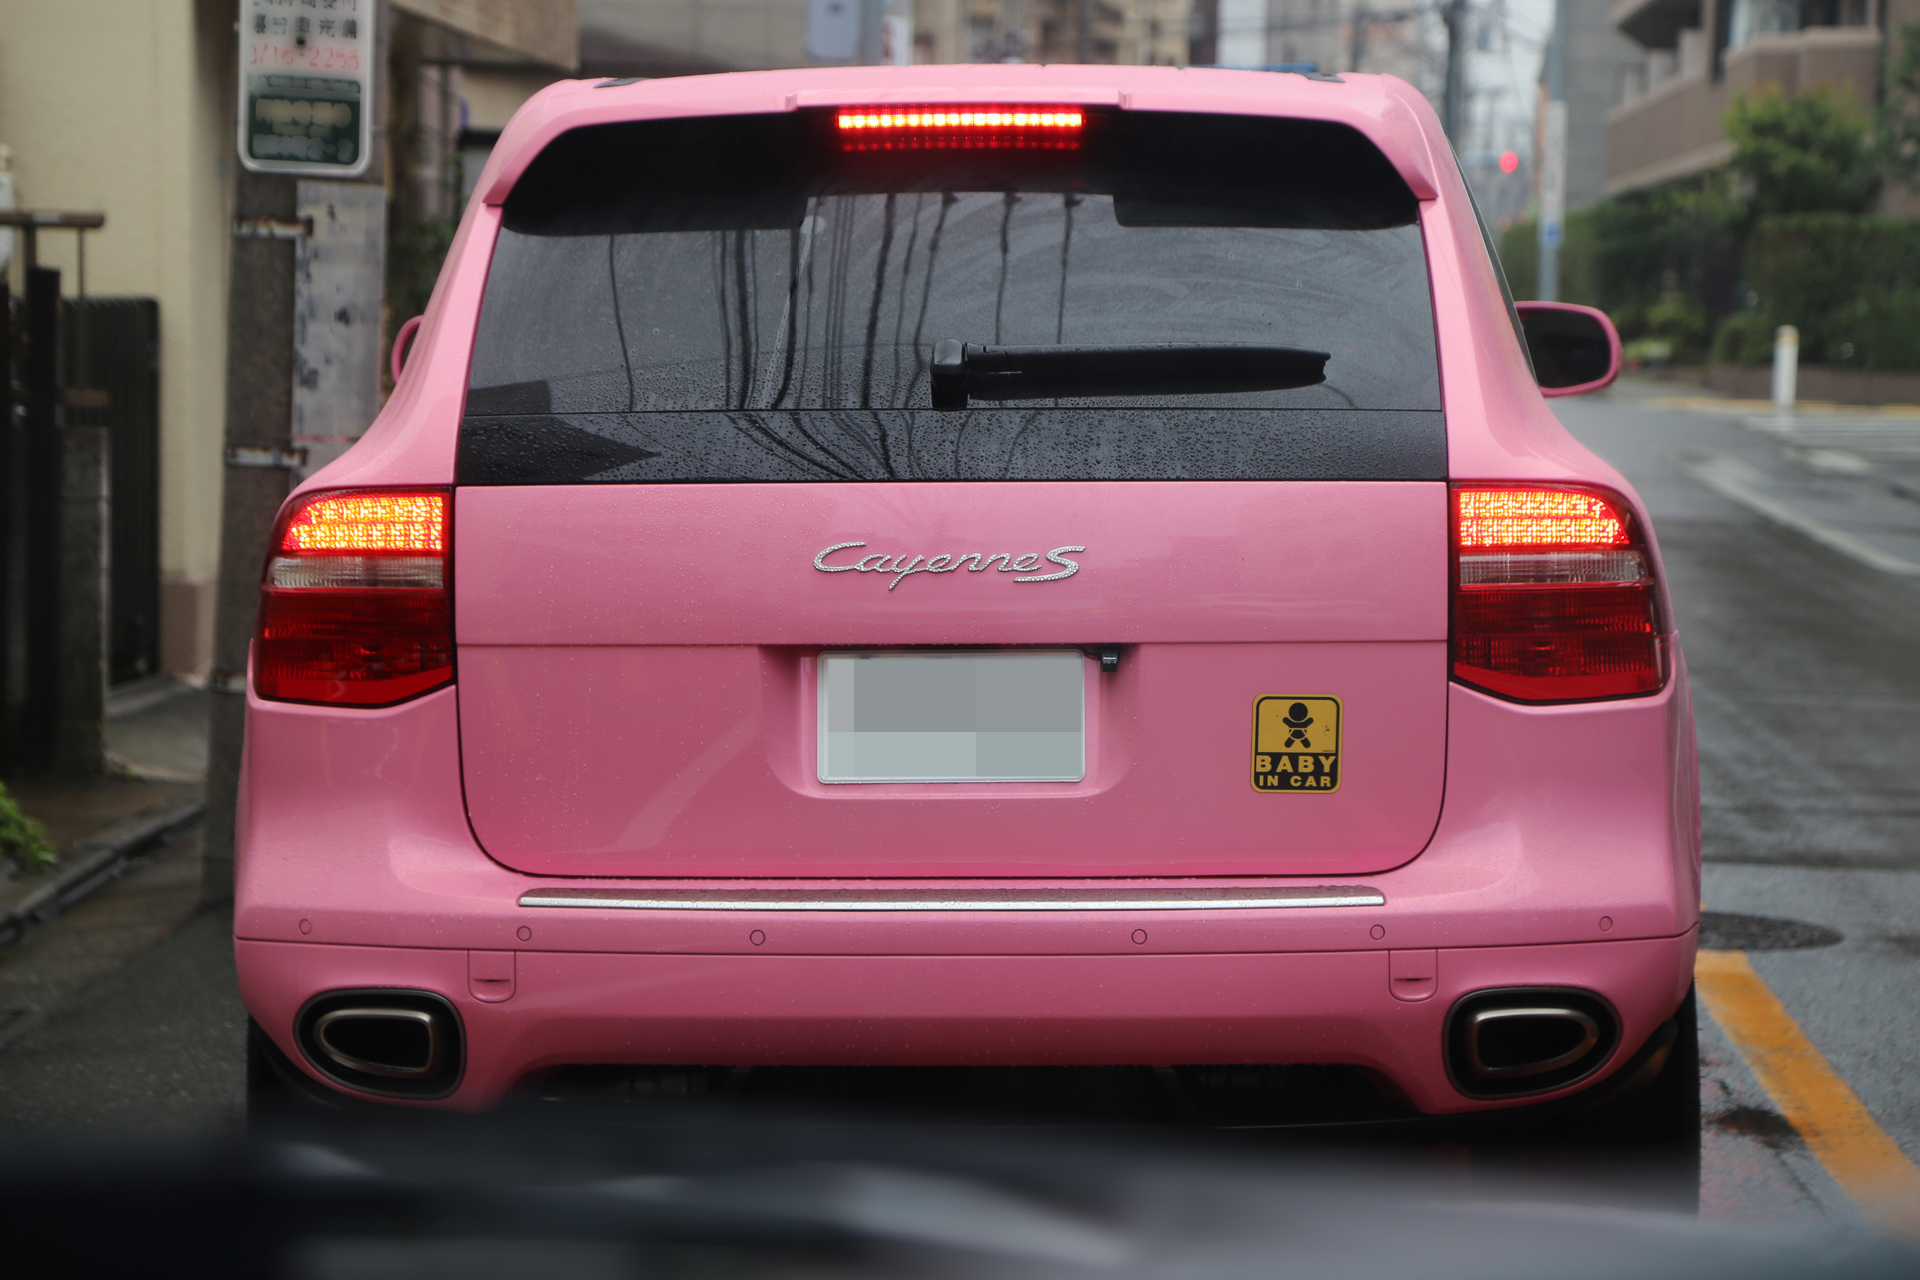 ピンクの車に関する記事一覧